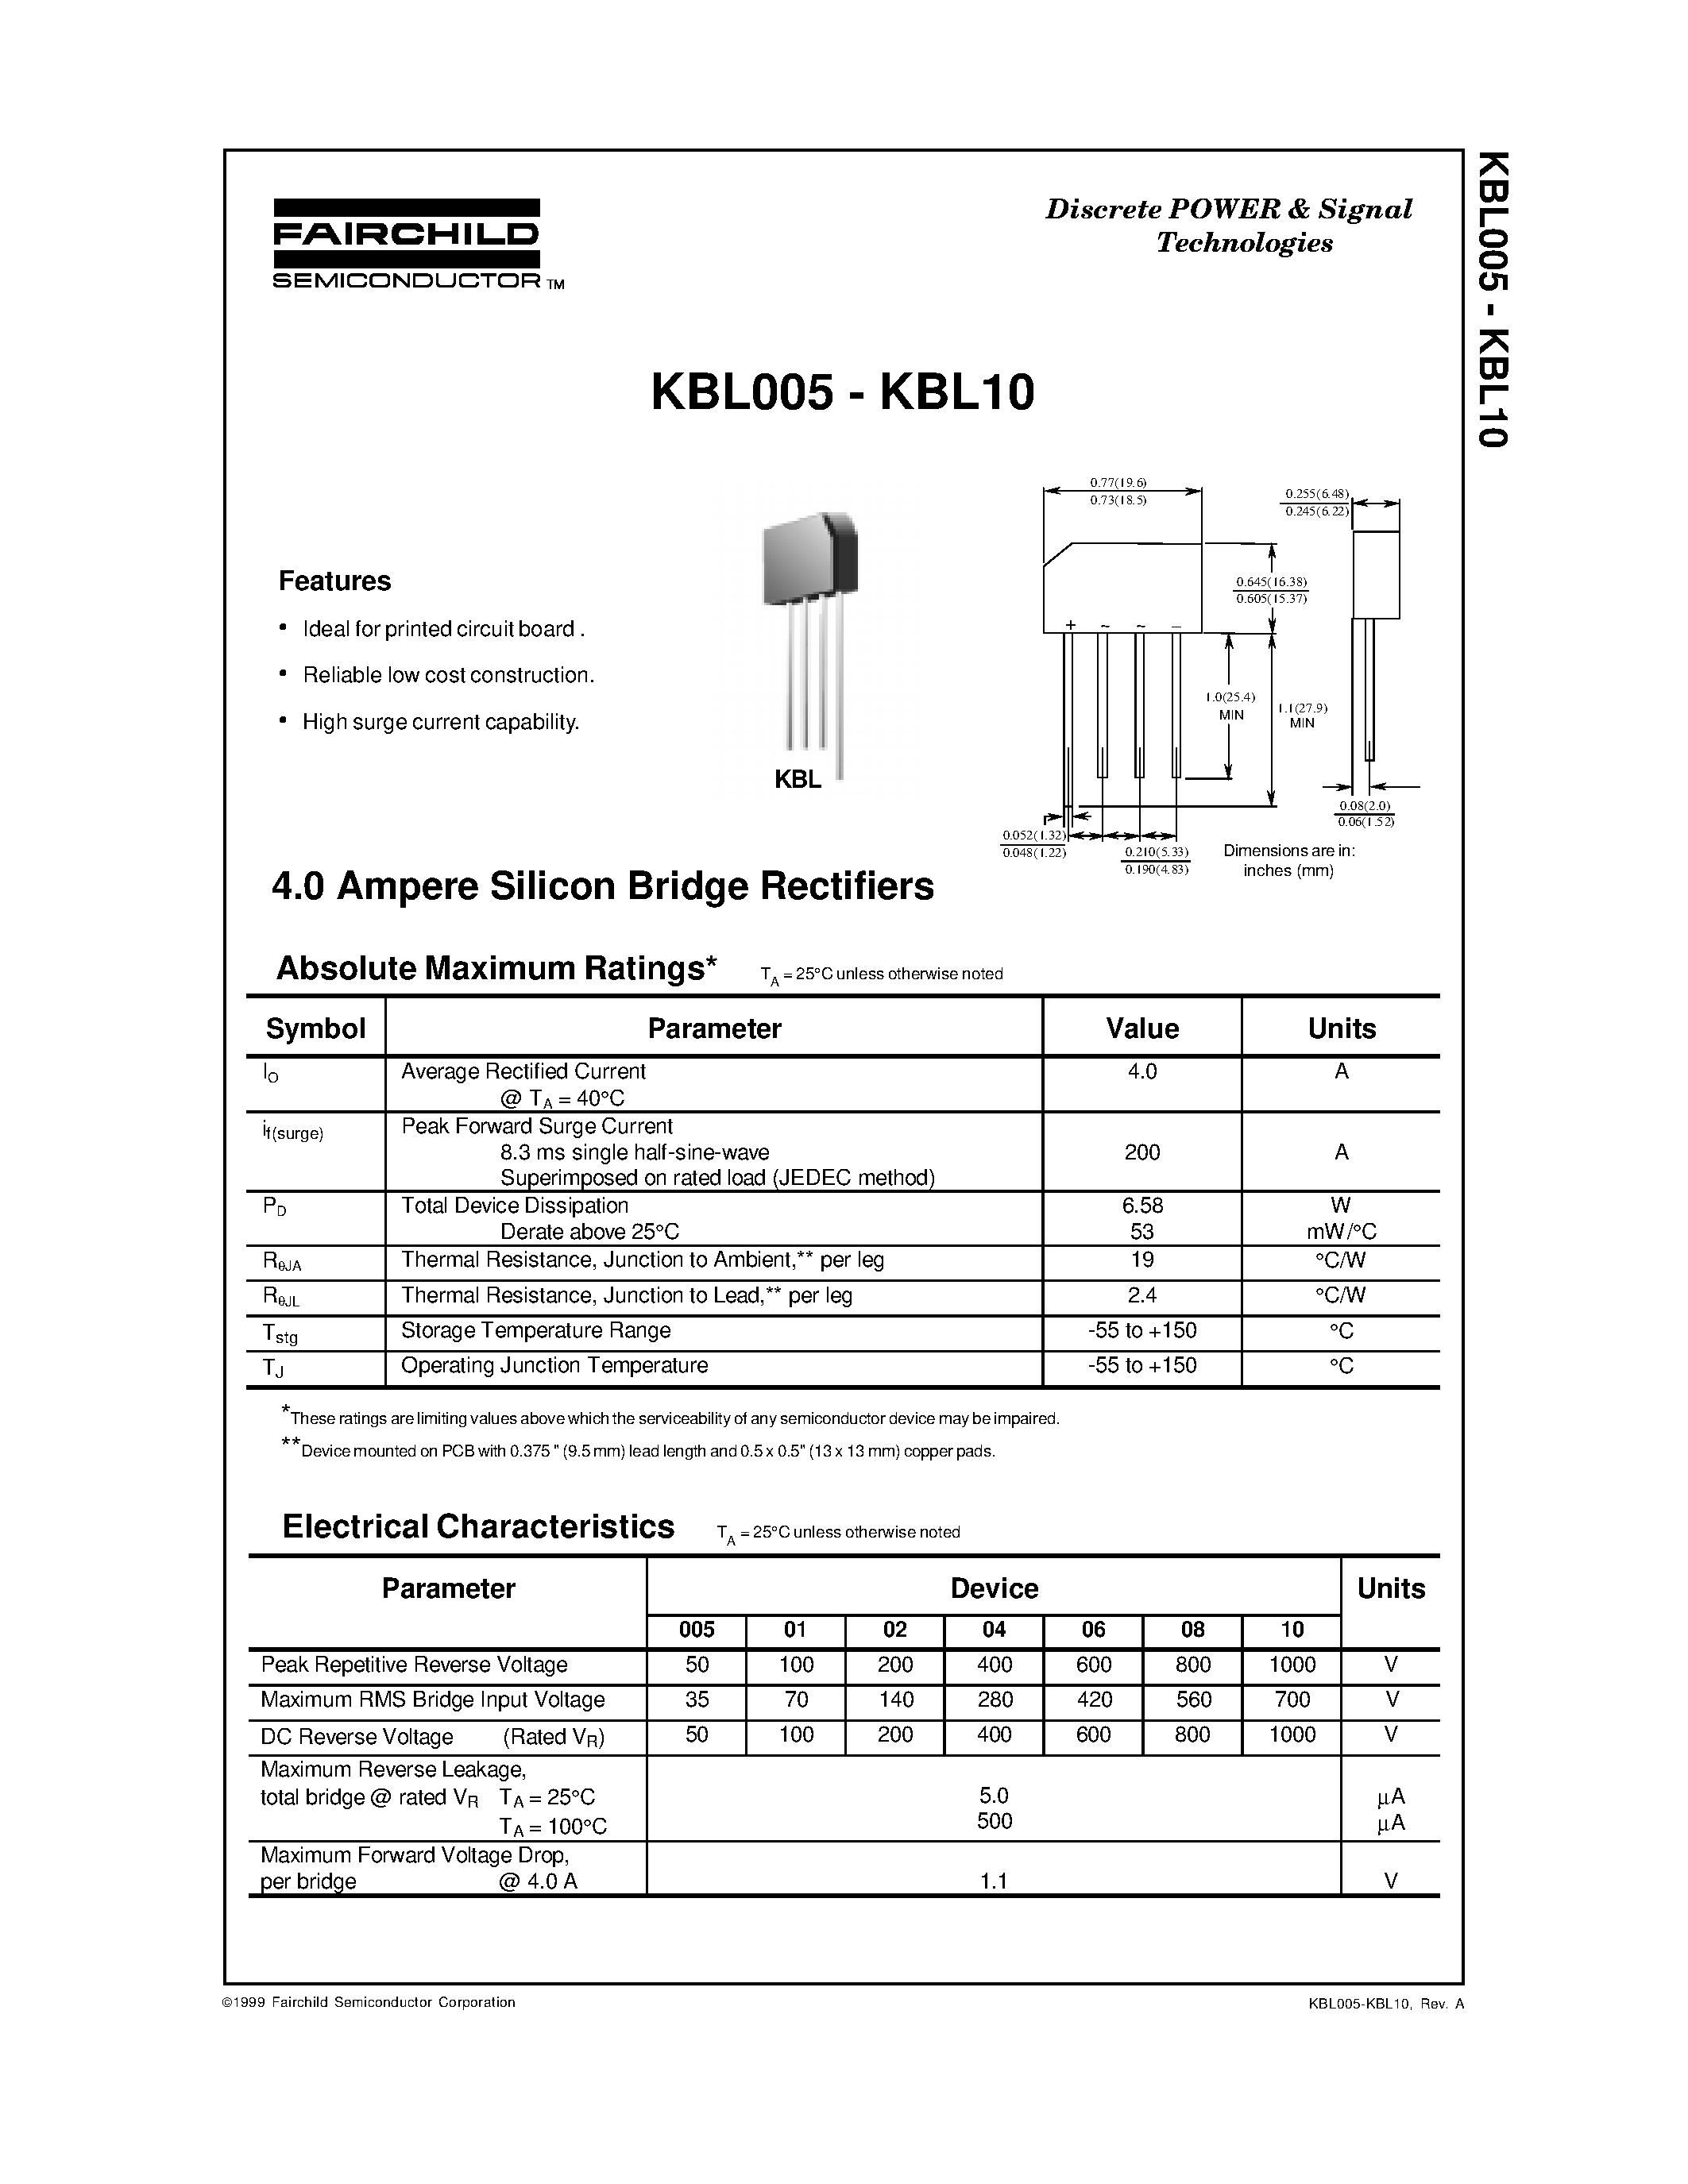 Datasheet KBL005 - (KBL005 - KBL10) 4.0 Ampere Silicon Bridge Rectifiers page 1